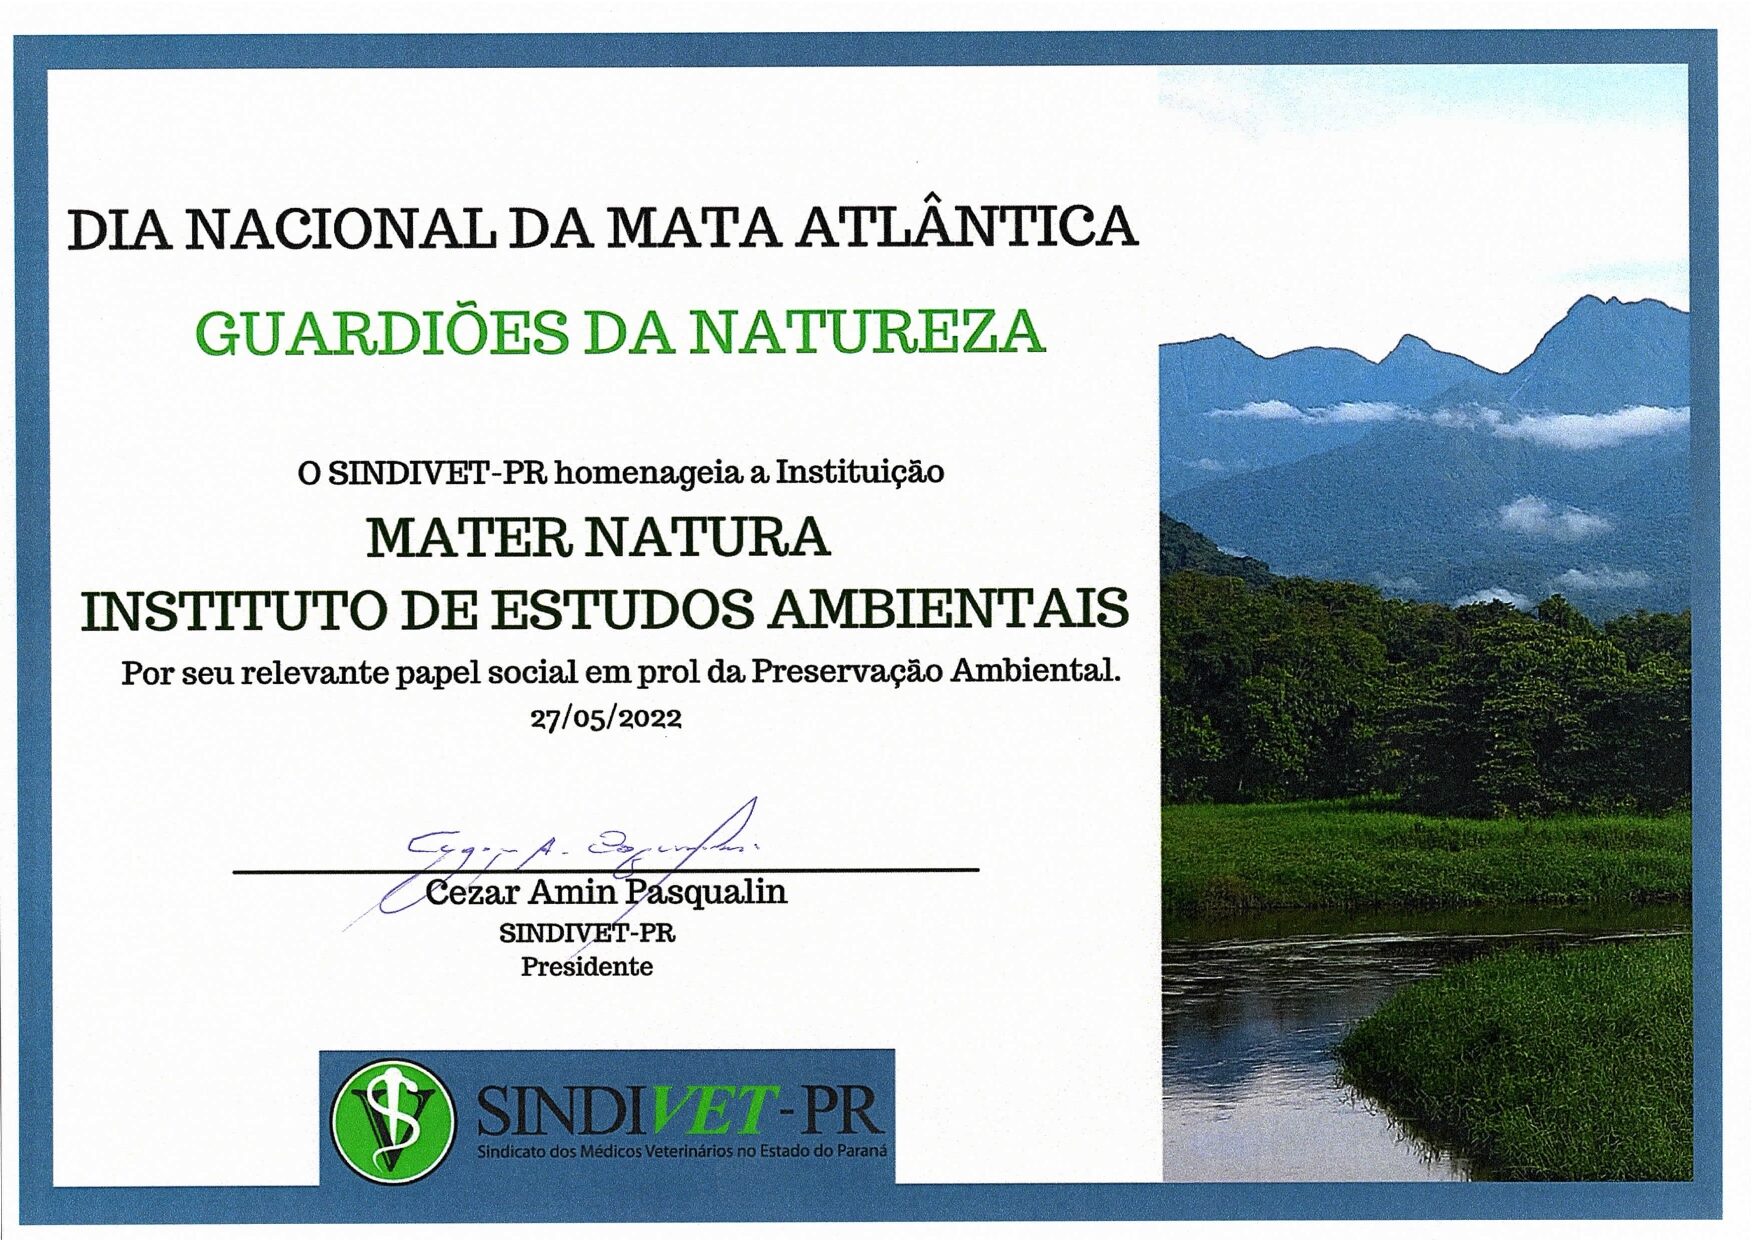 Premio_SindiVet-PR_Guardioes_da_Natureza